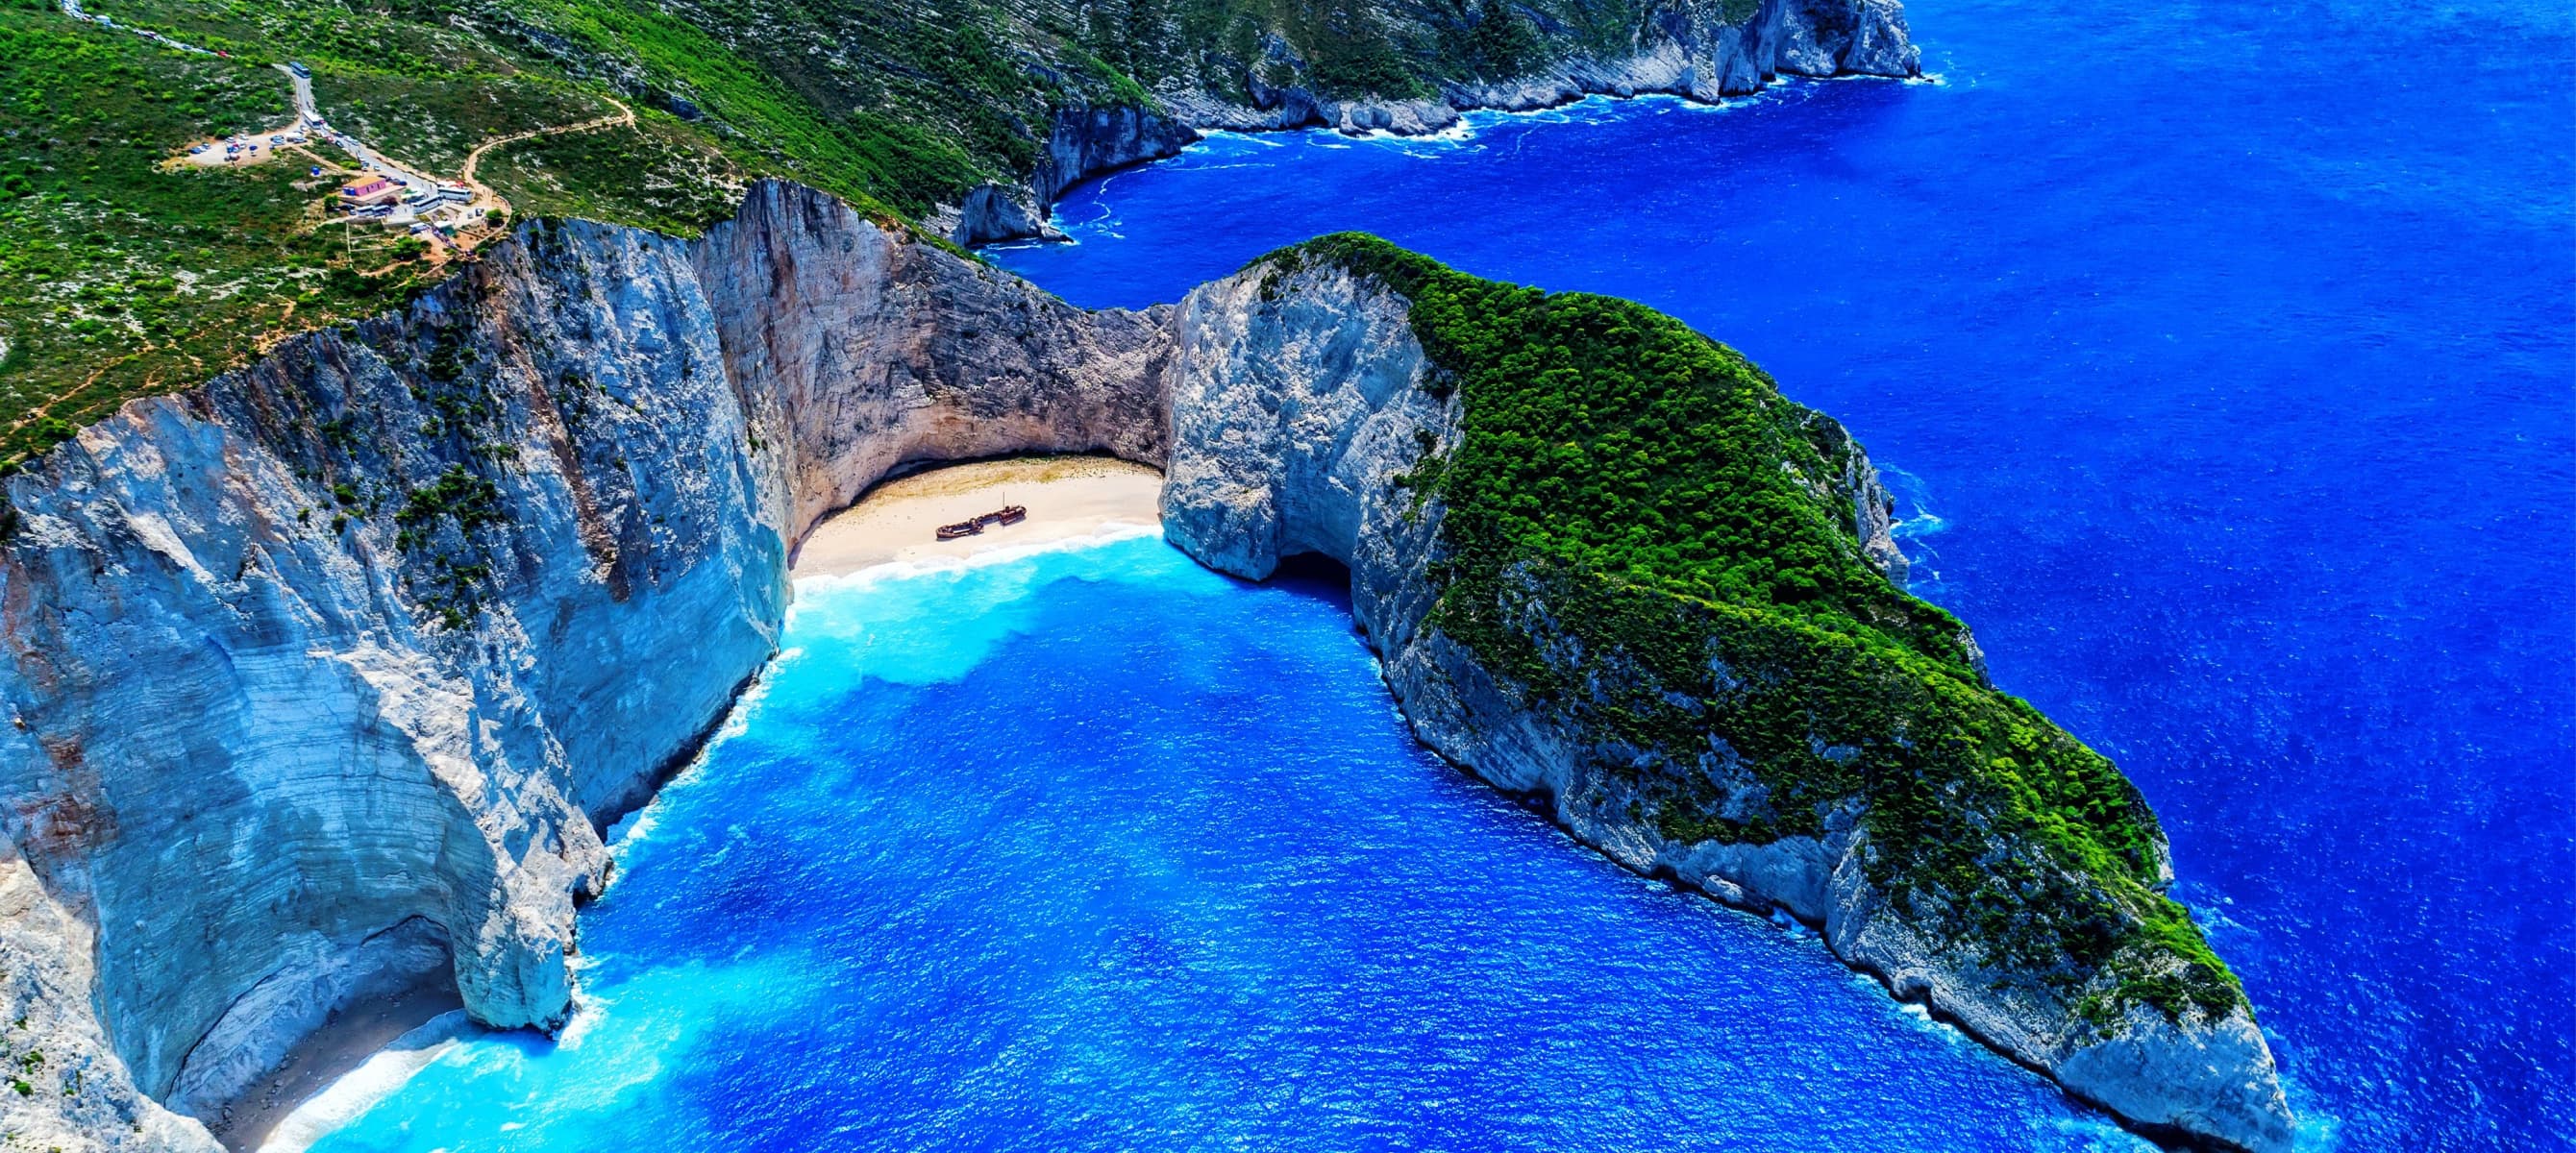 Bãi biển tốt nhất ở Hy Lạp là những điểm đến hoàn hảo cho một kỳ nghỉ tuyệt vời. Từ bãi biển Santorini đến Navagio, mỗi bãi biển đem đến cho bạn một cảm giác tuyệt vời của sự yên bình và đẹp tự nhiên. Hãy cùng khám phá những bãi biển tuyệt đẹp này để tăng thêm niềm vui cho kỳ nghỉ của bạn!